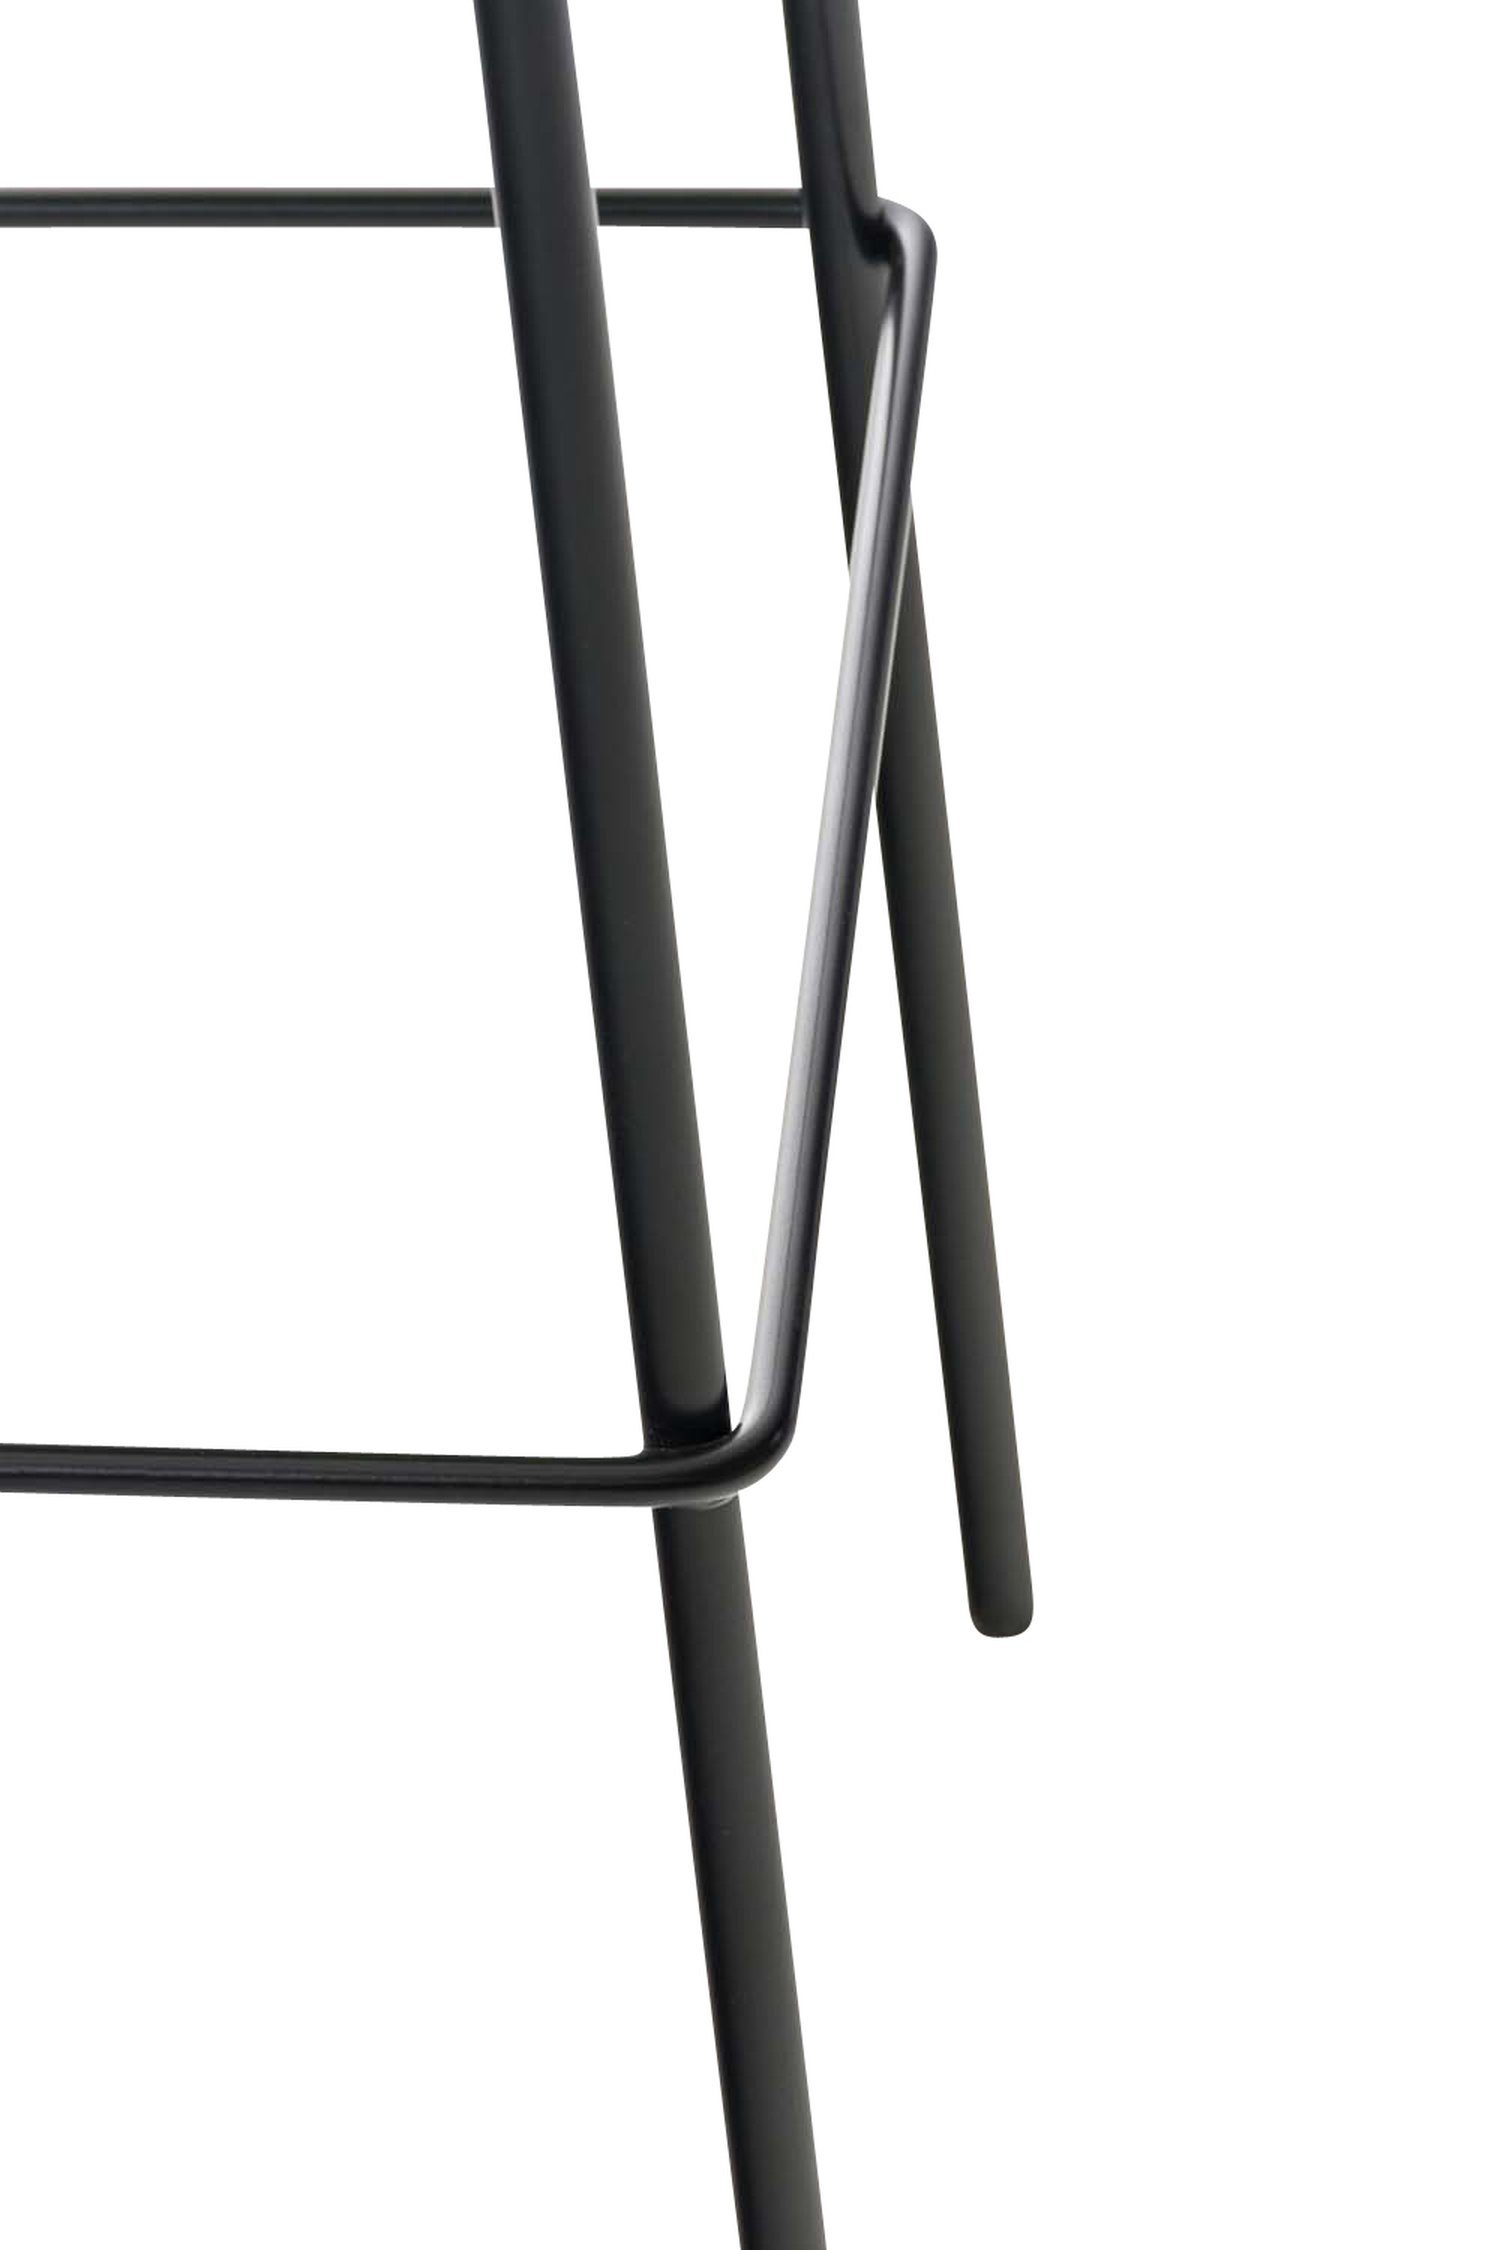 TPFLiving Barhocker Hoover (mit schwarz & - Theke Fußstütze Küche Gestell für - Metall Tresenhocker), - Sitzfläche: Hocker Stoff Creme